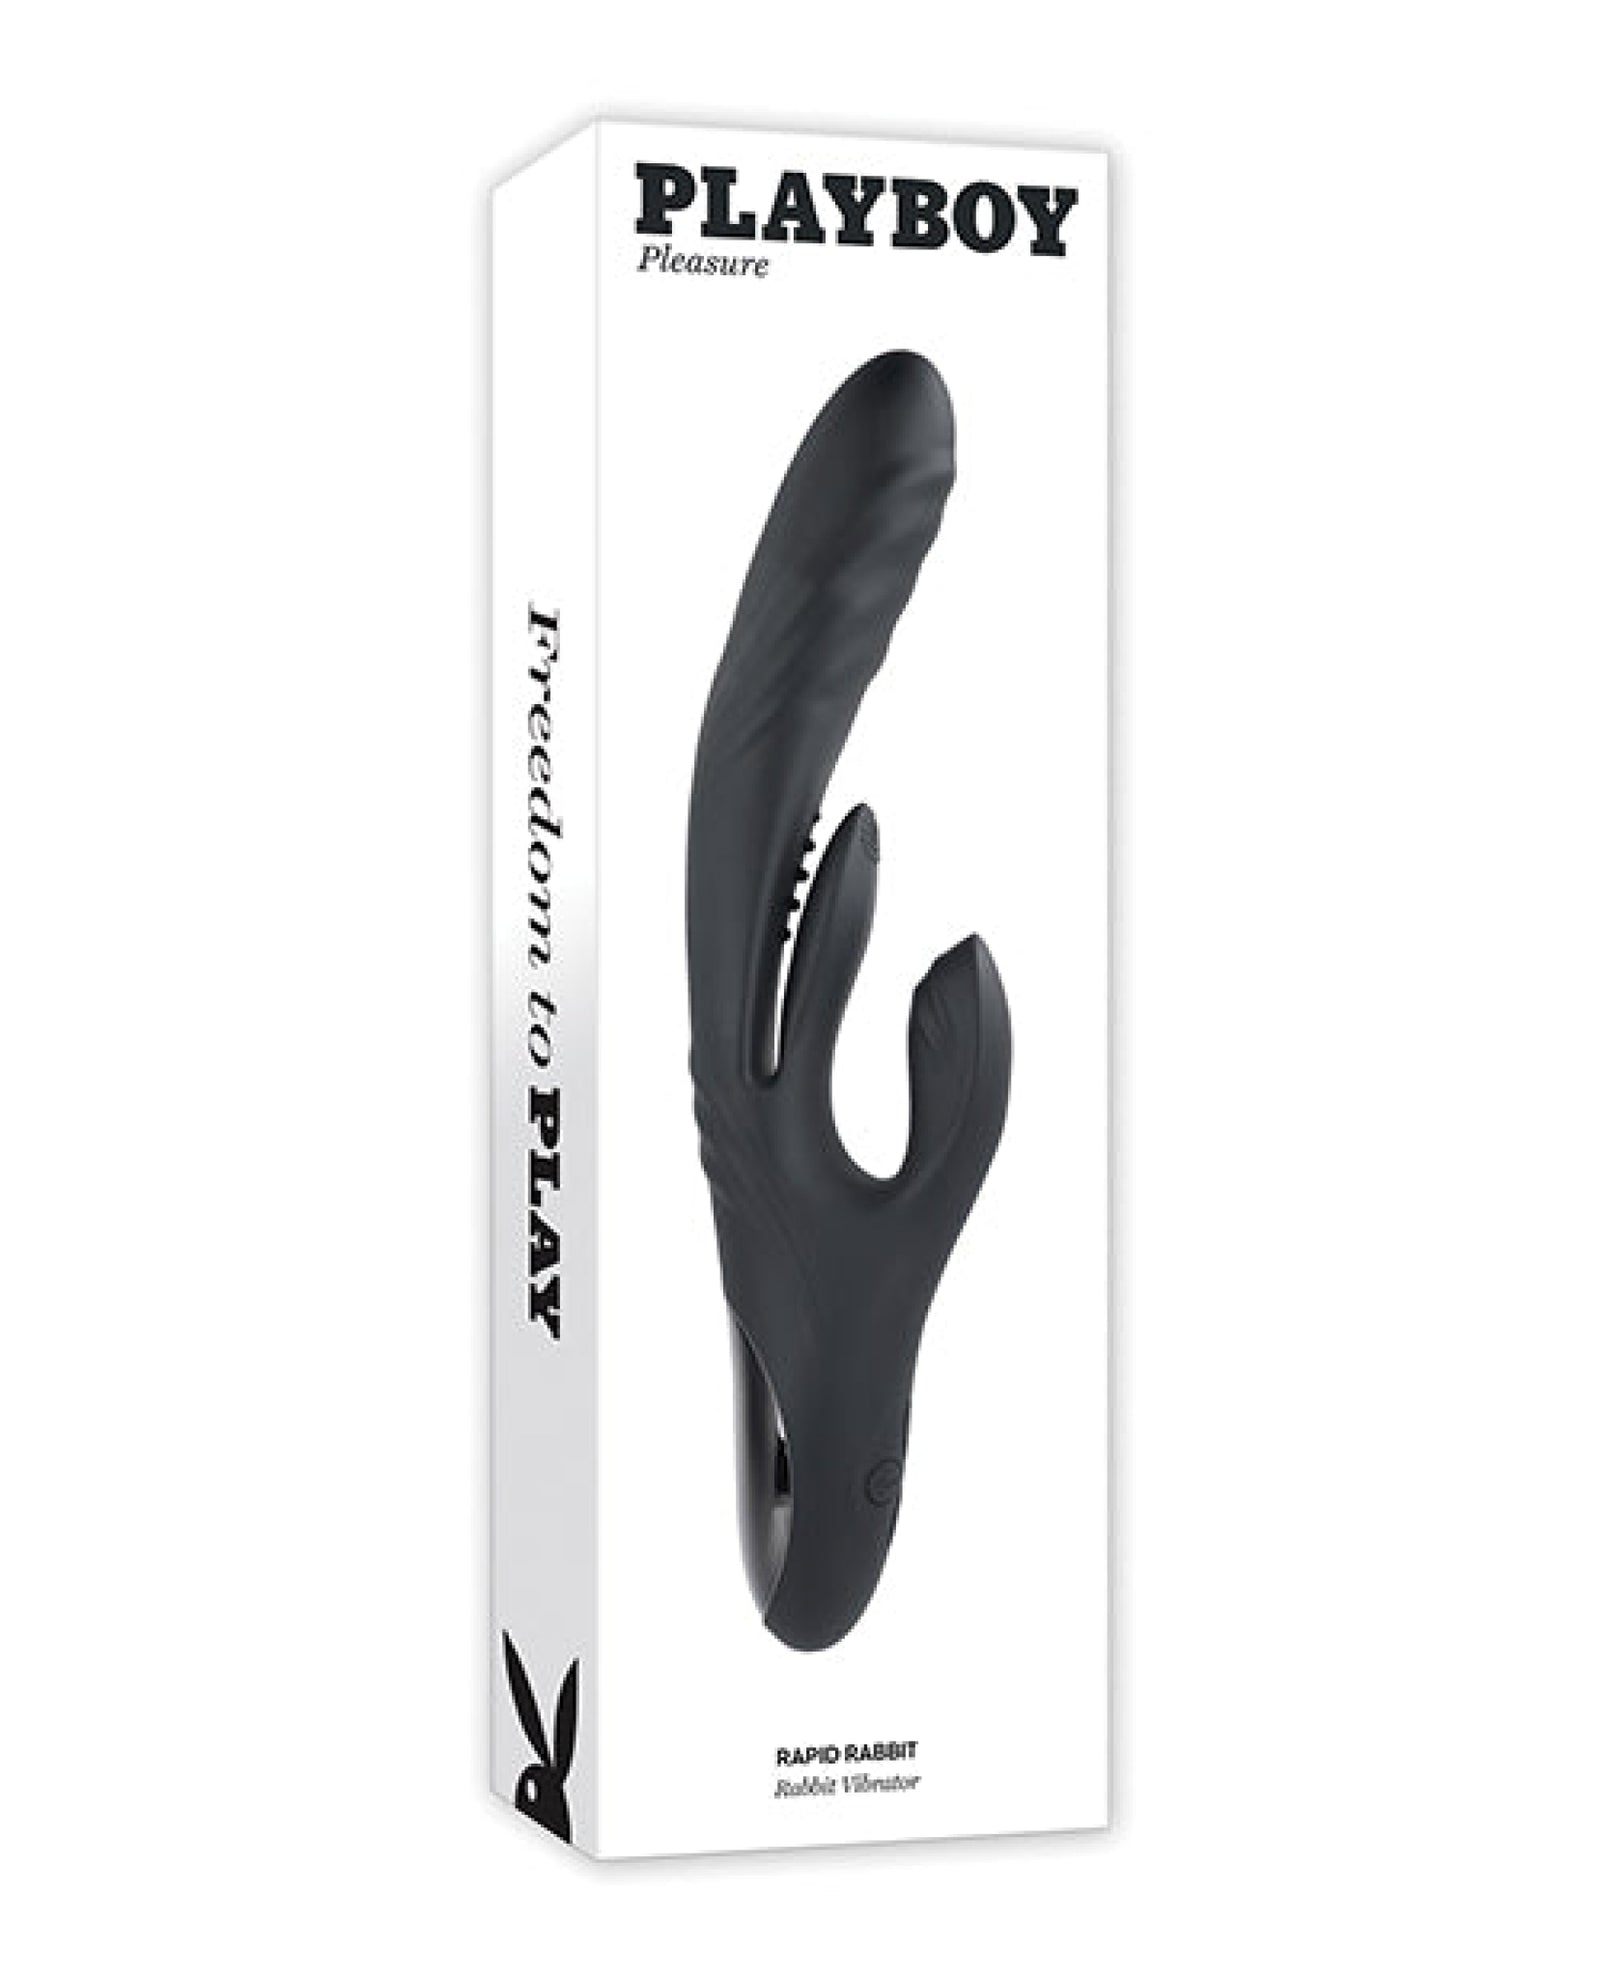 Playboy Pleasure Rapid Rabbit Vibrator - 2 Am Playboy